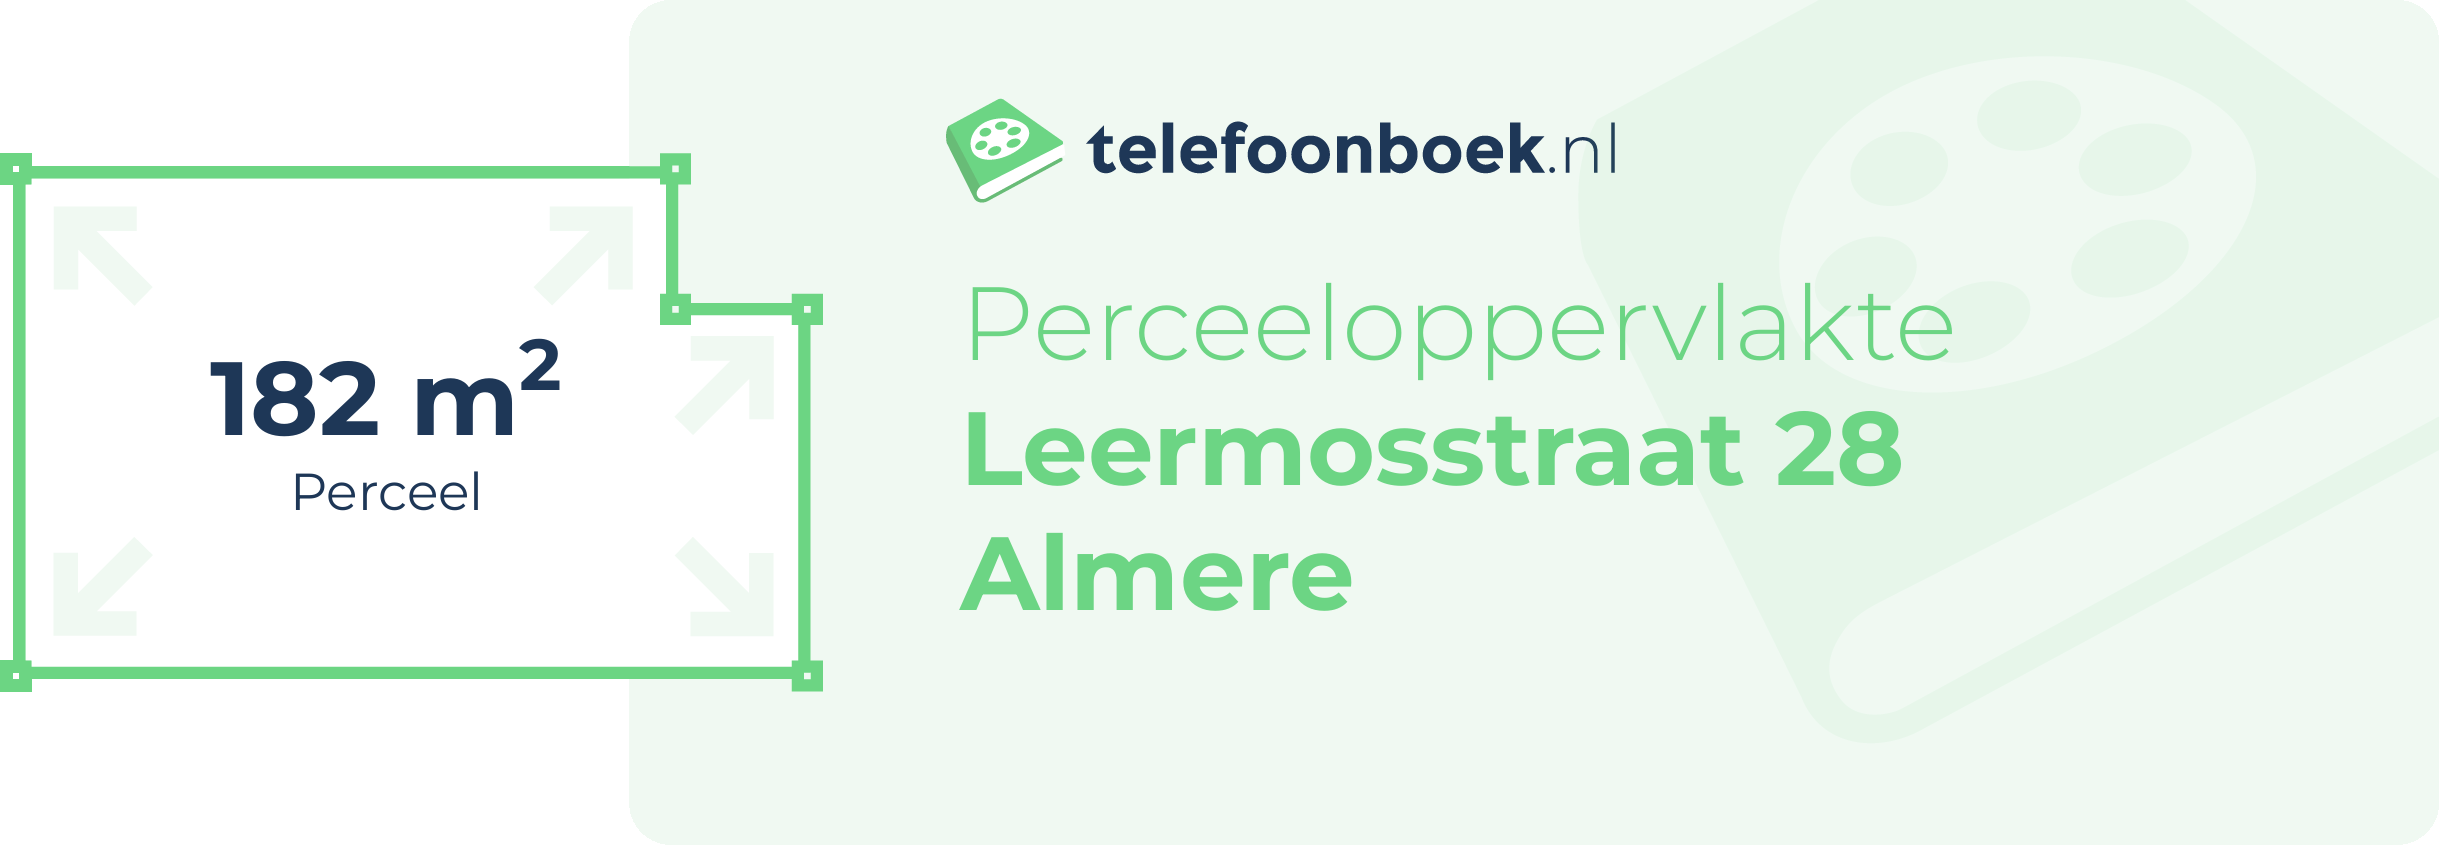 Perceeloppervlakte Leermosstraat 28 Almere